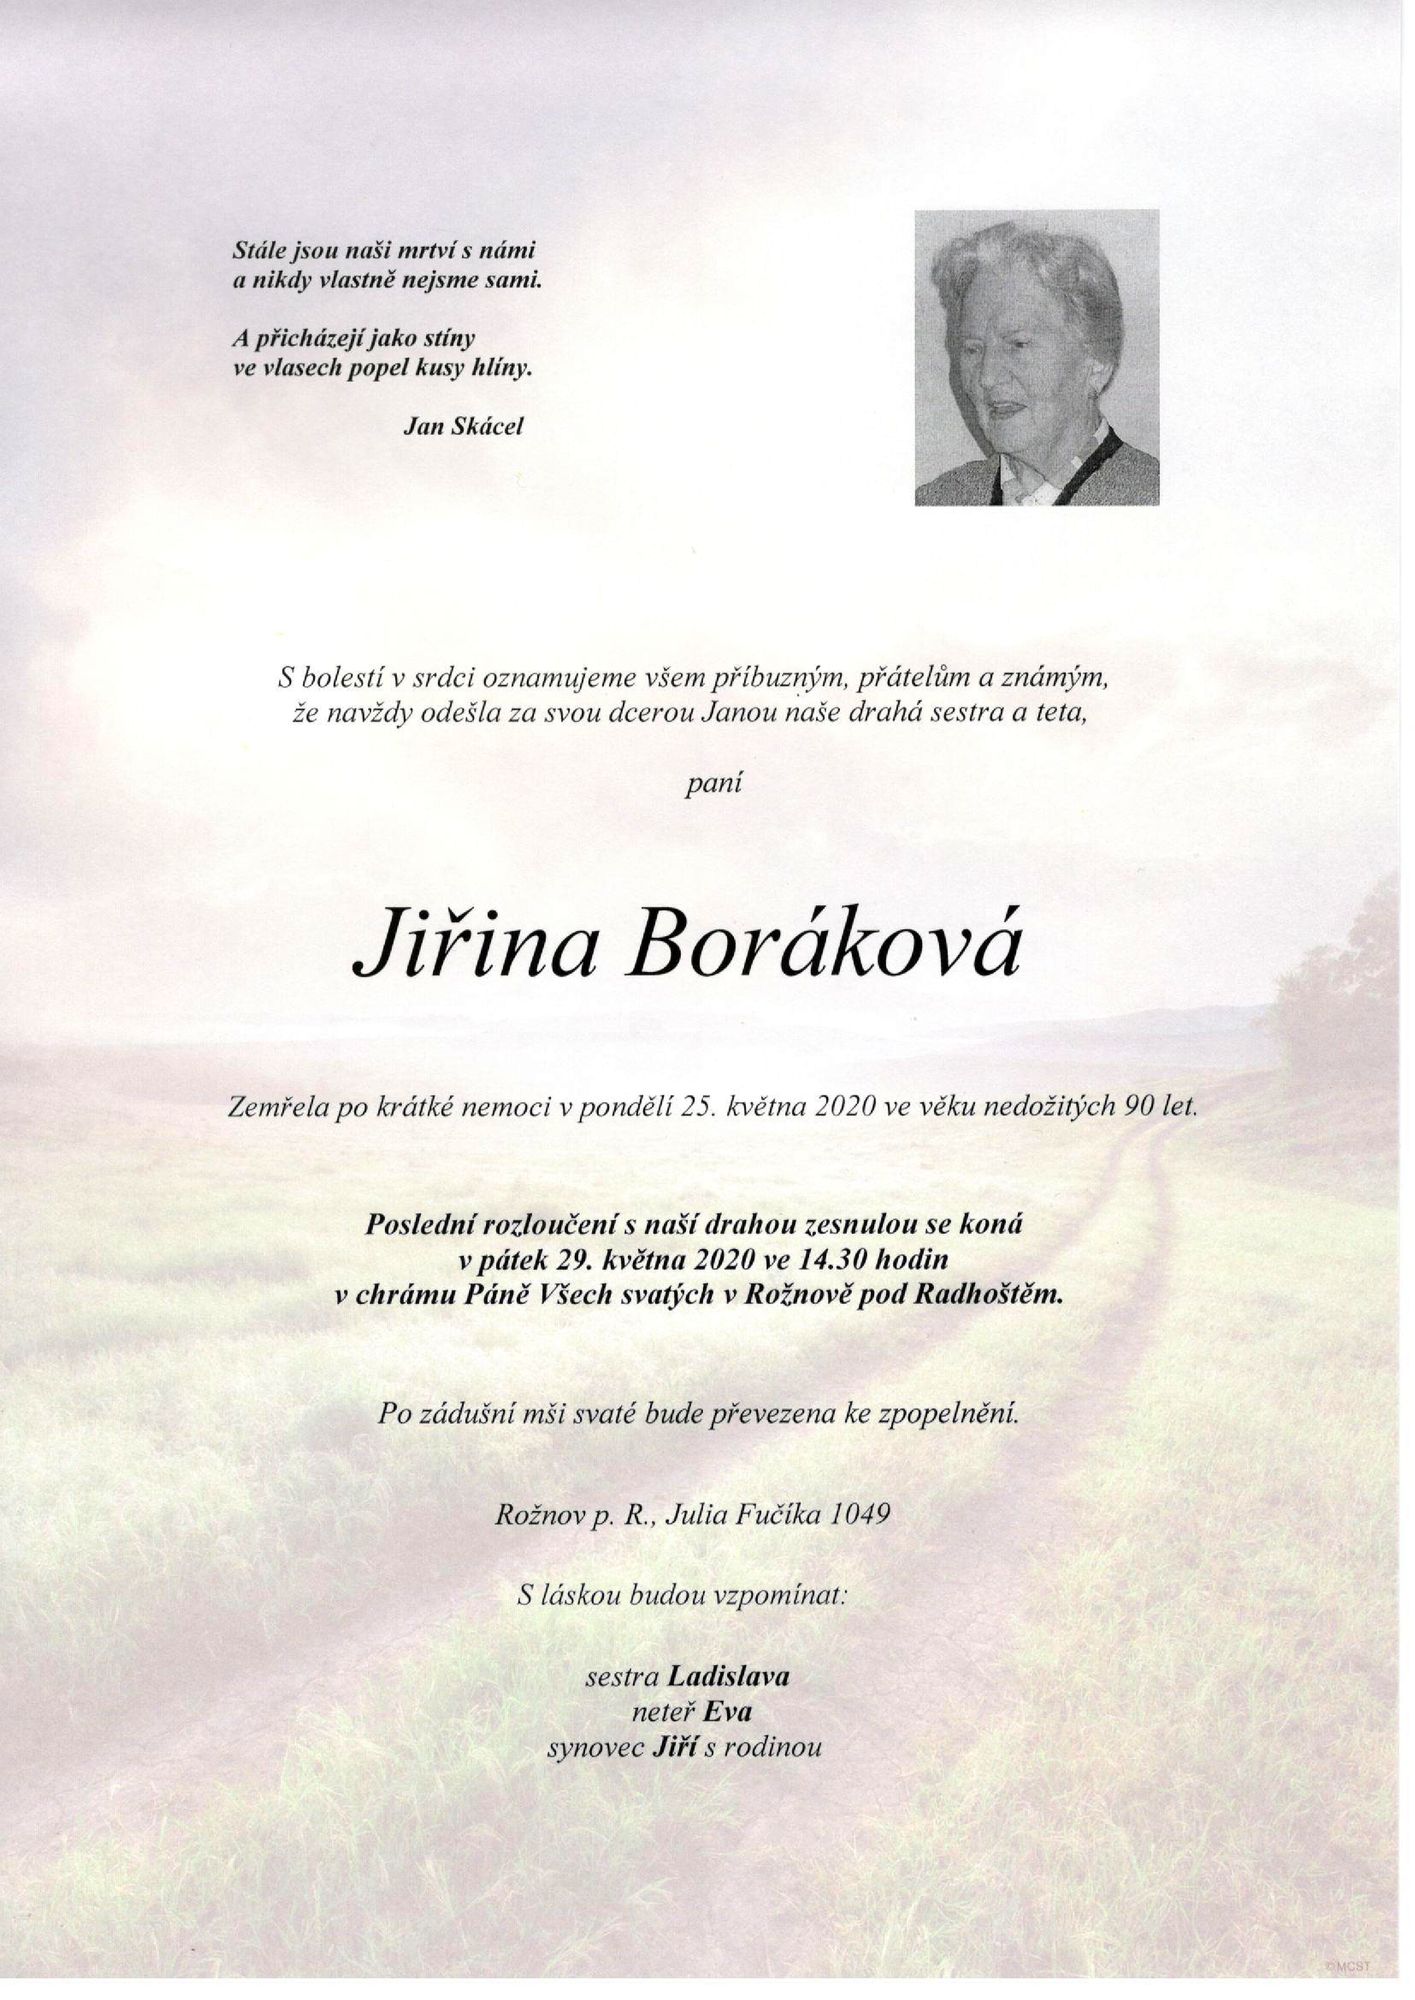 Jiřina Boráková